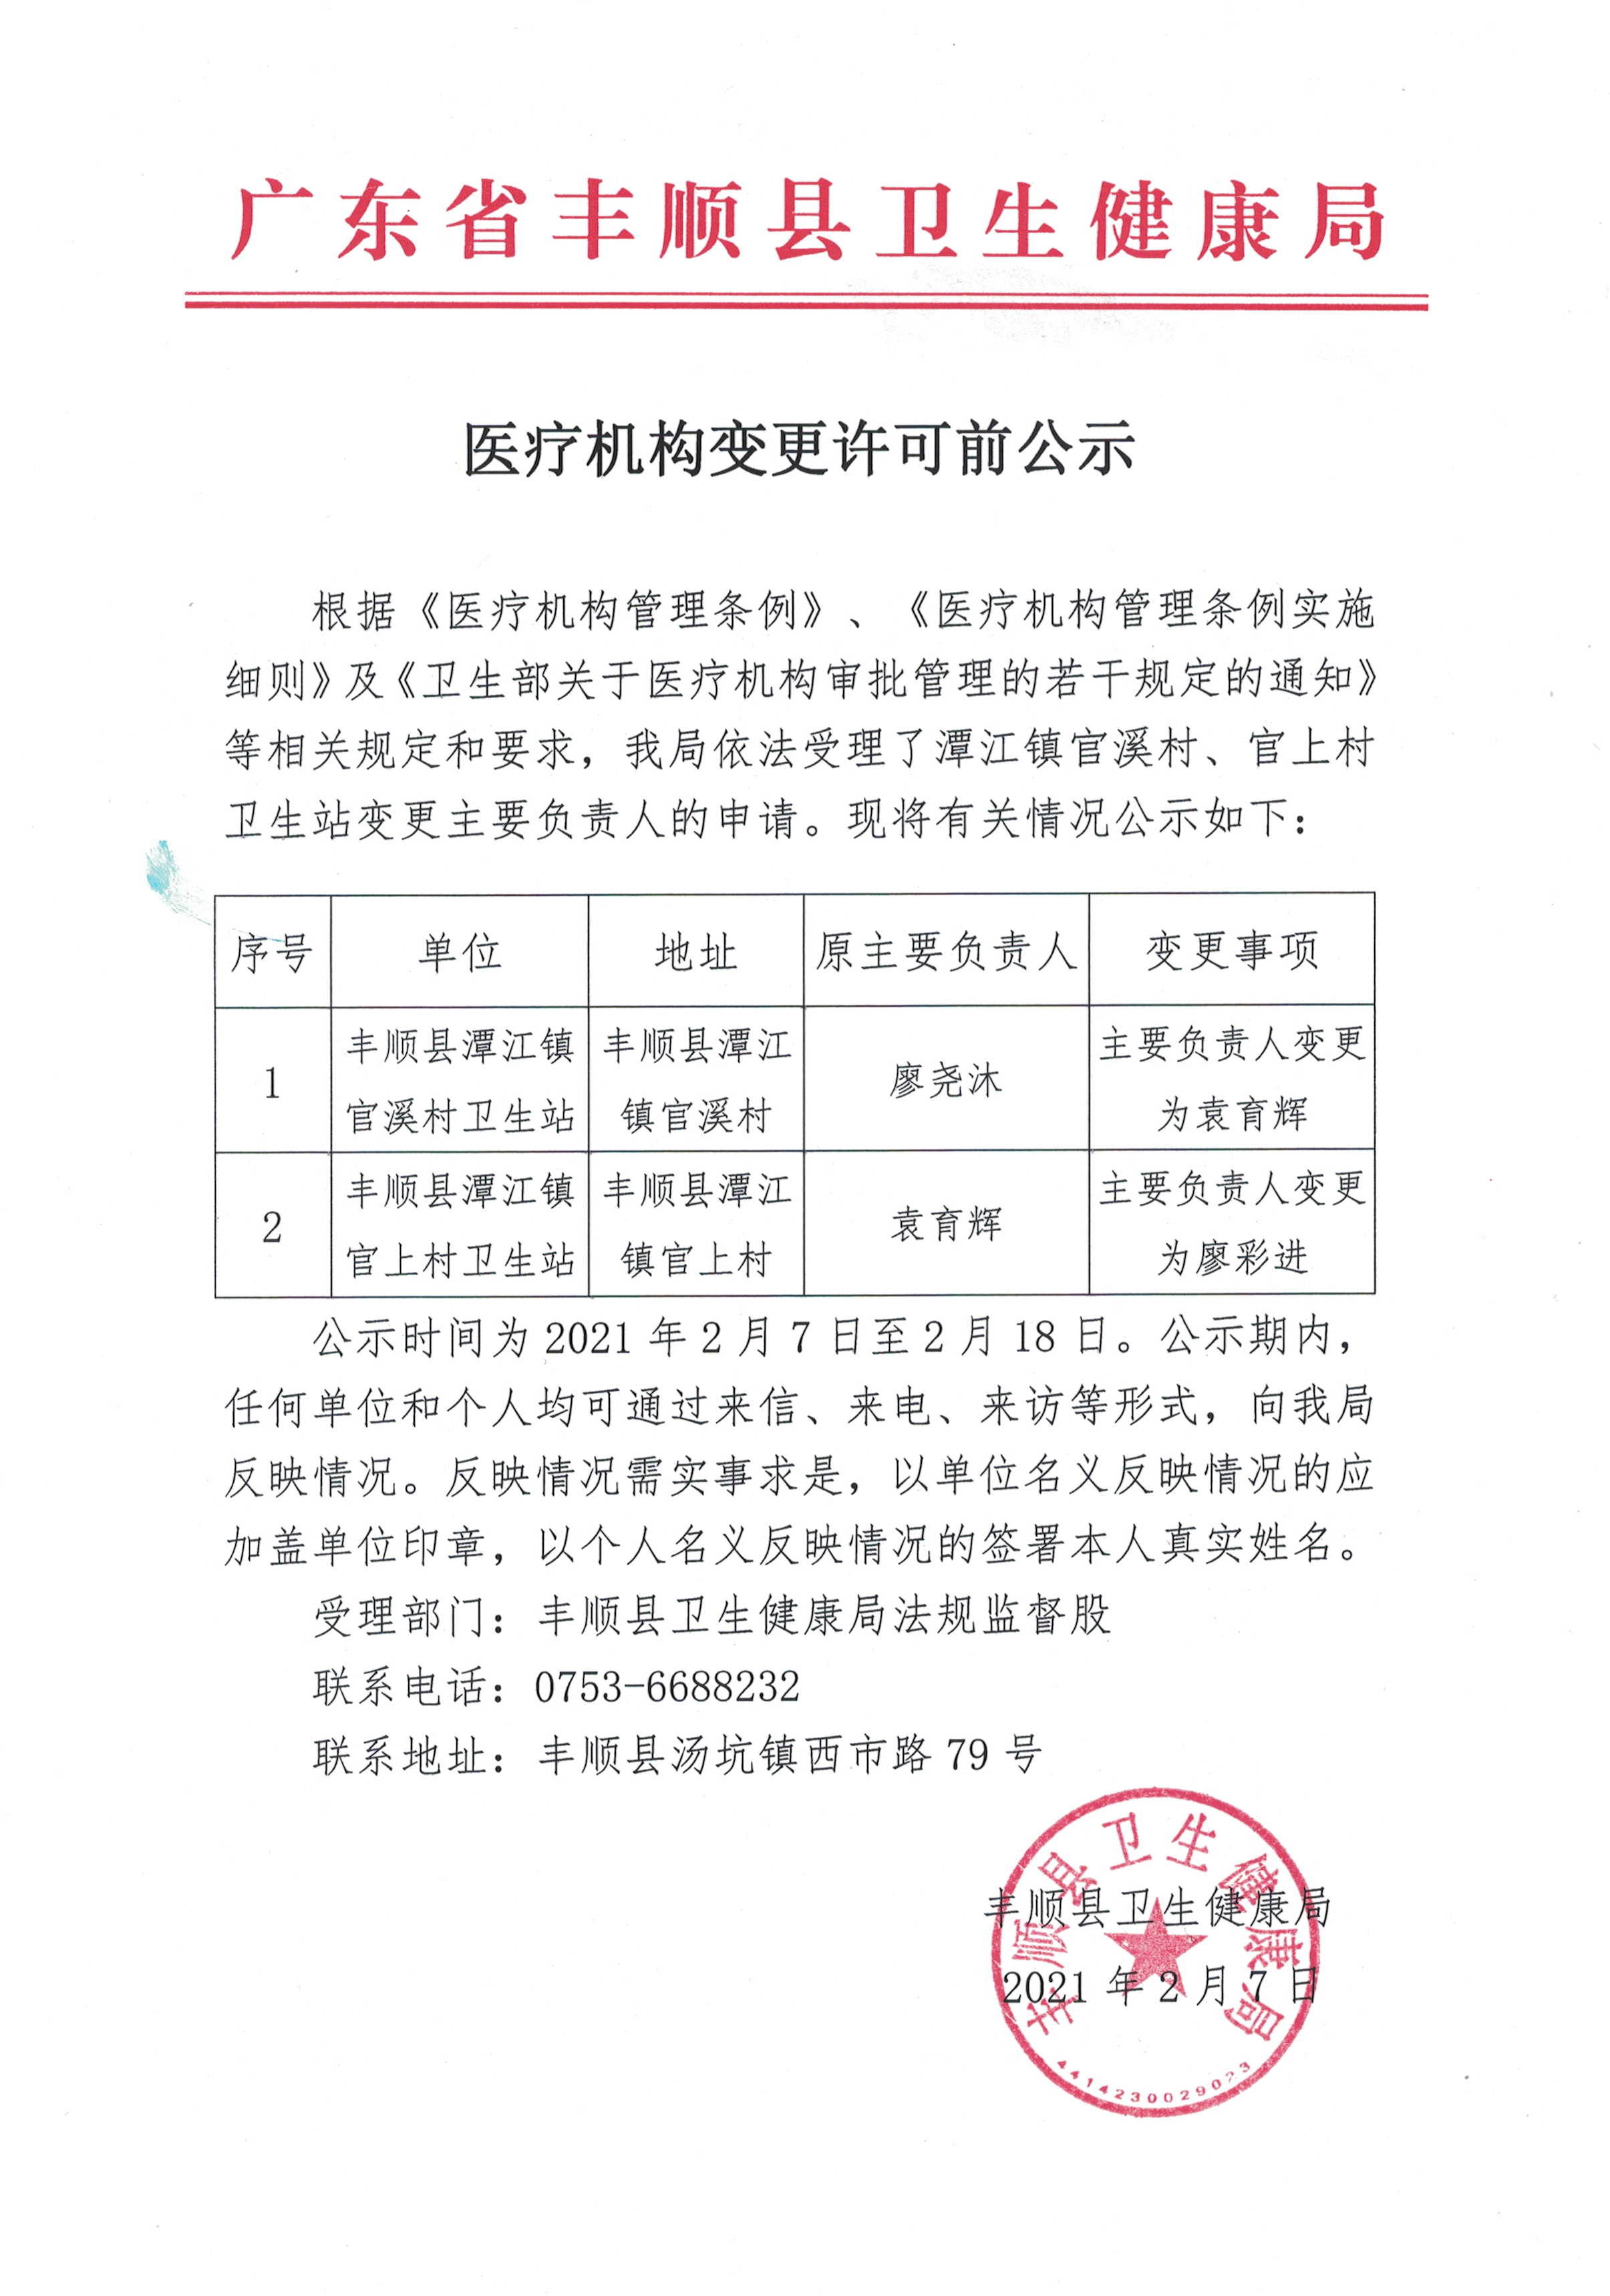 关于潭江镇官溪村、官上村卫生站变更主要负责人的公示(1).jpg